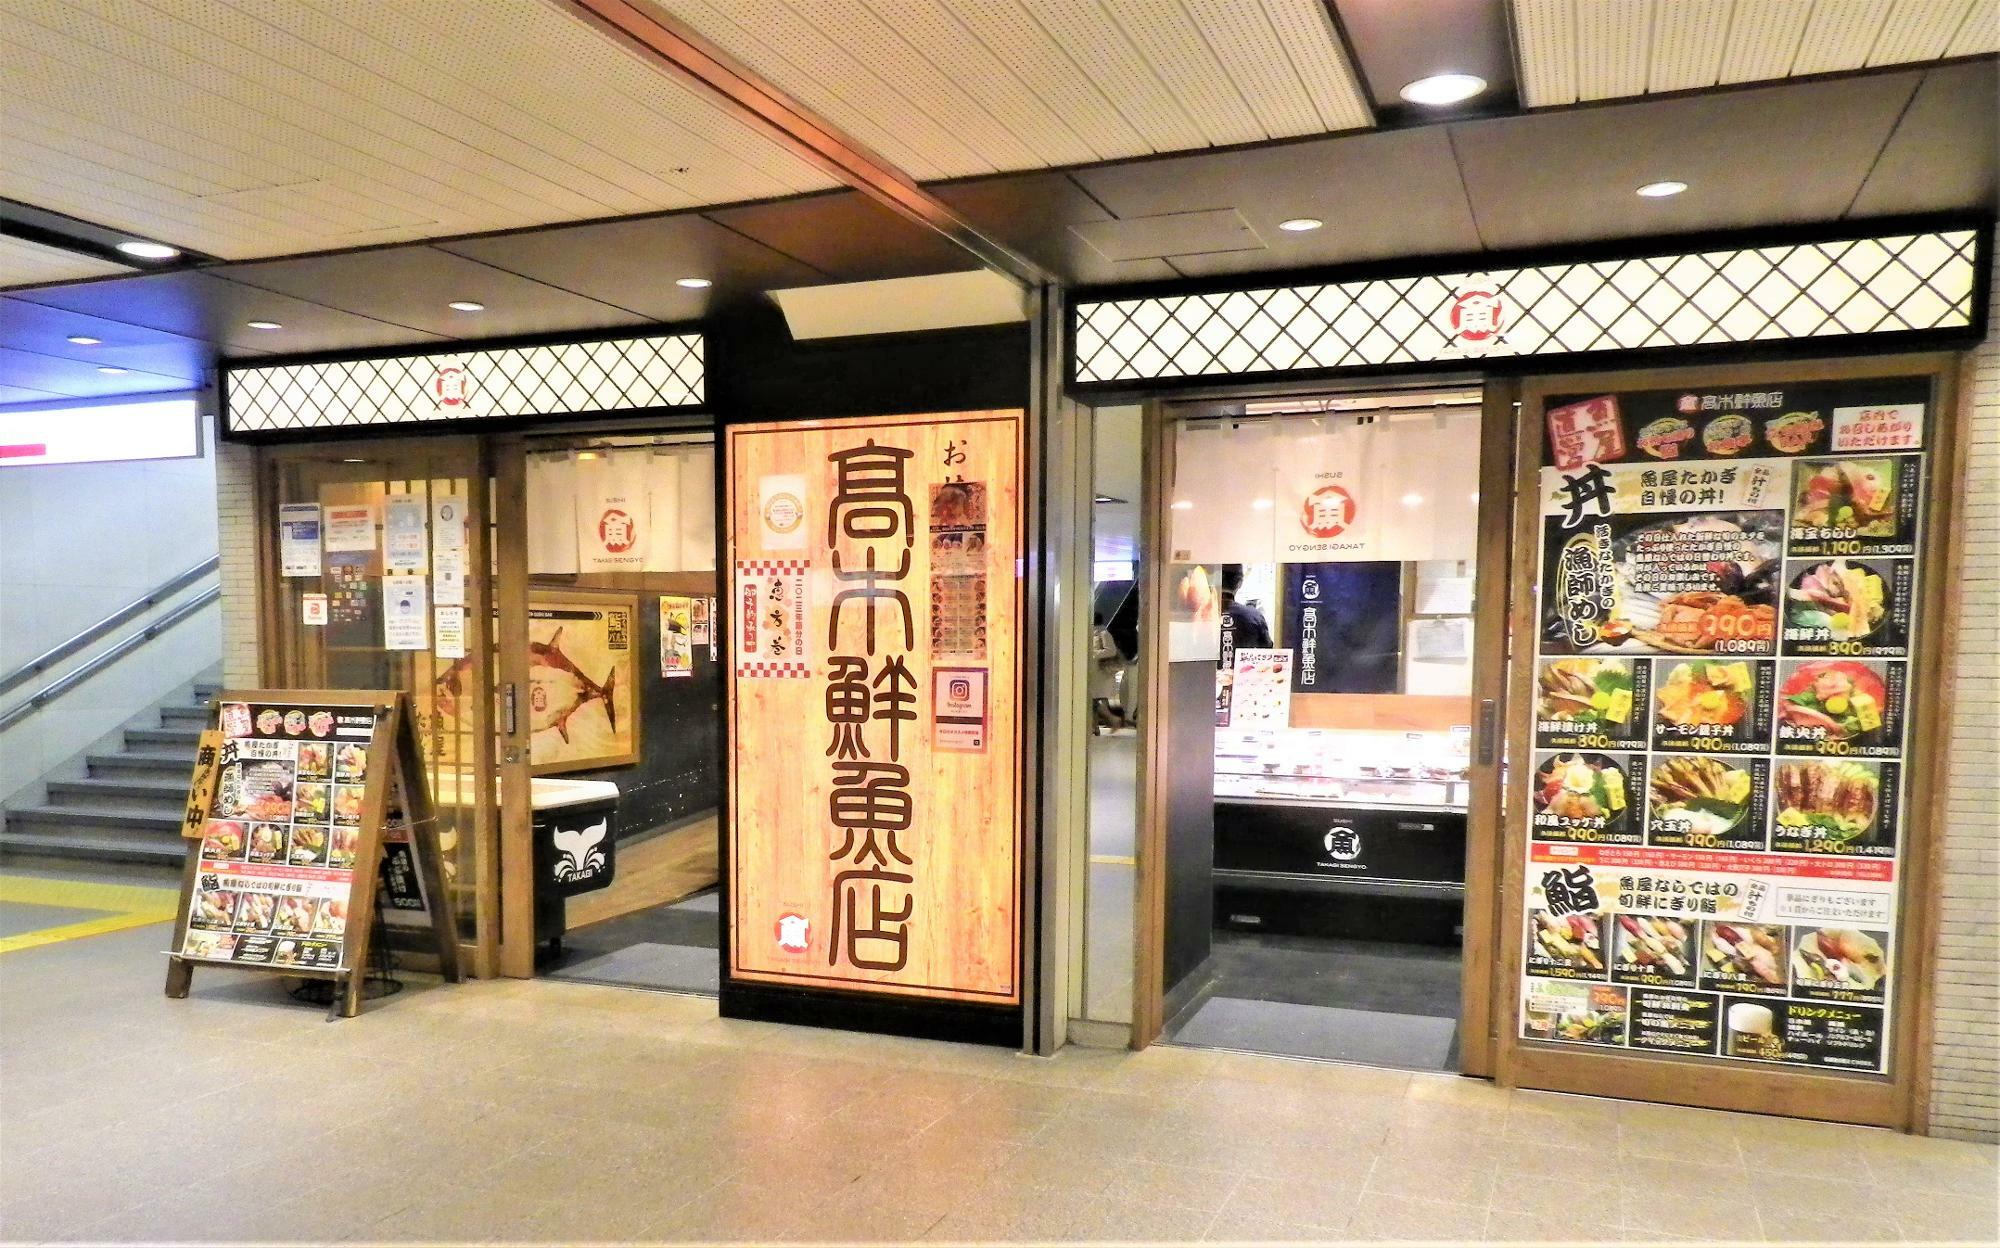 高木鮮魚店梅田店にはイートインコーナーもあります。